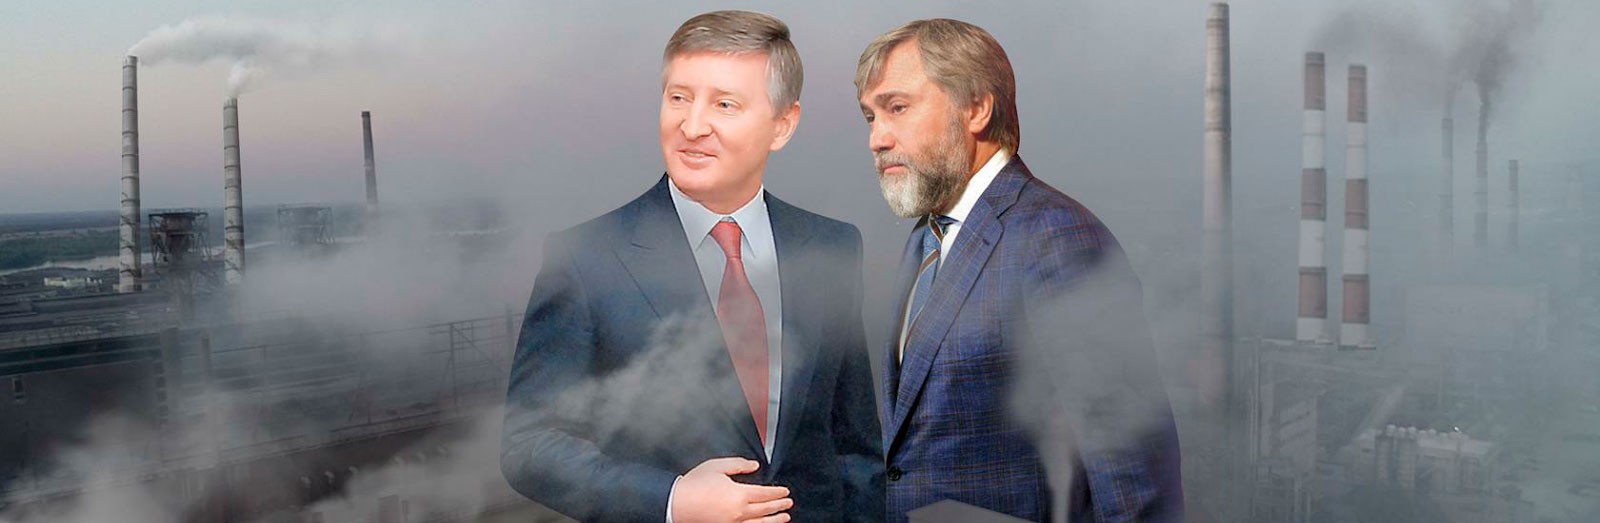 Ринат Ахметов, введя в заблуждение АМКУ, монополизировал коксохимическую отрасль